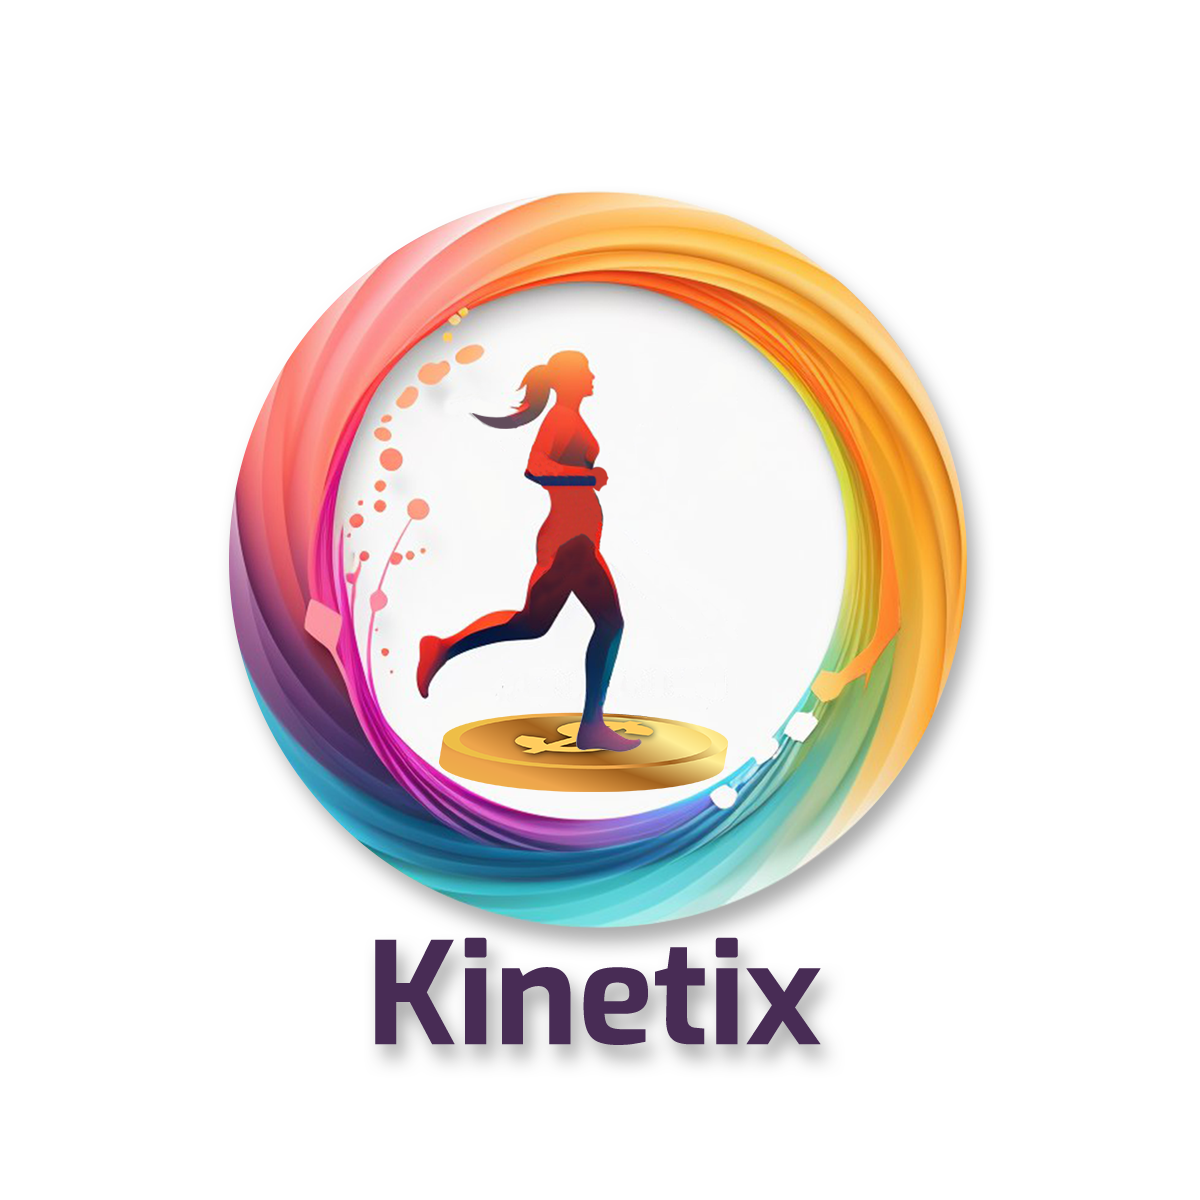 Walk, earn, transform: Kinetix in motion